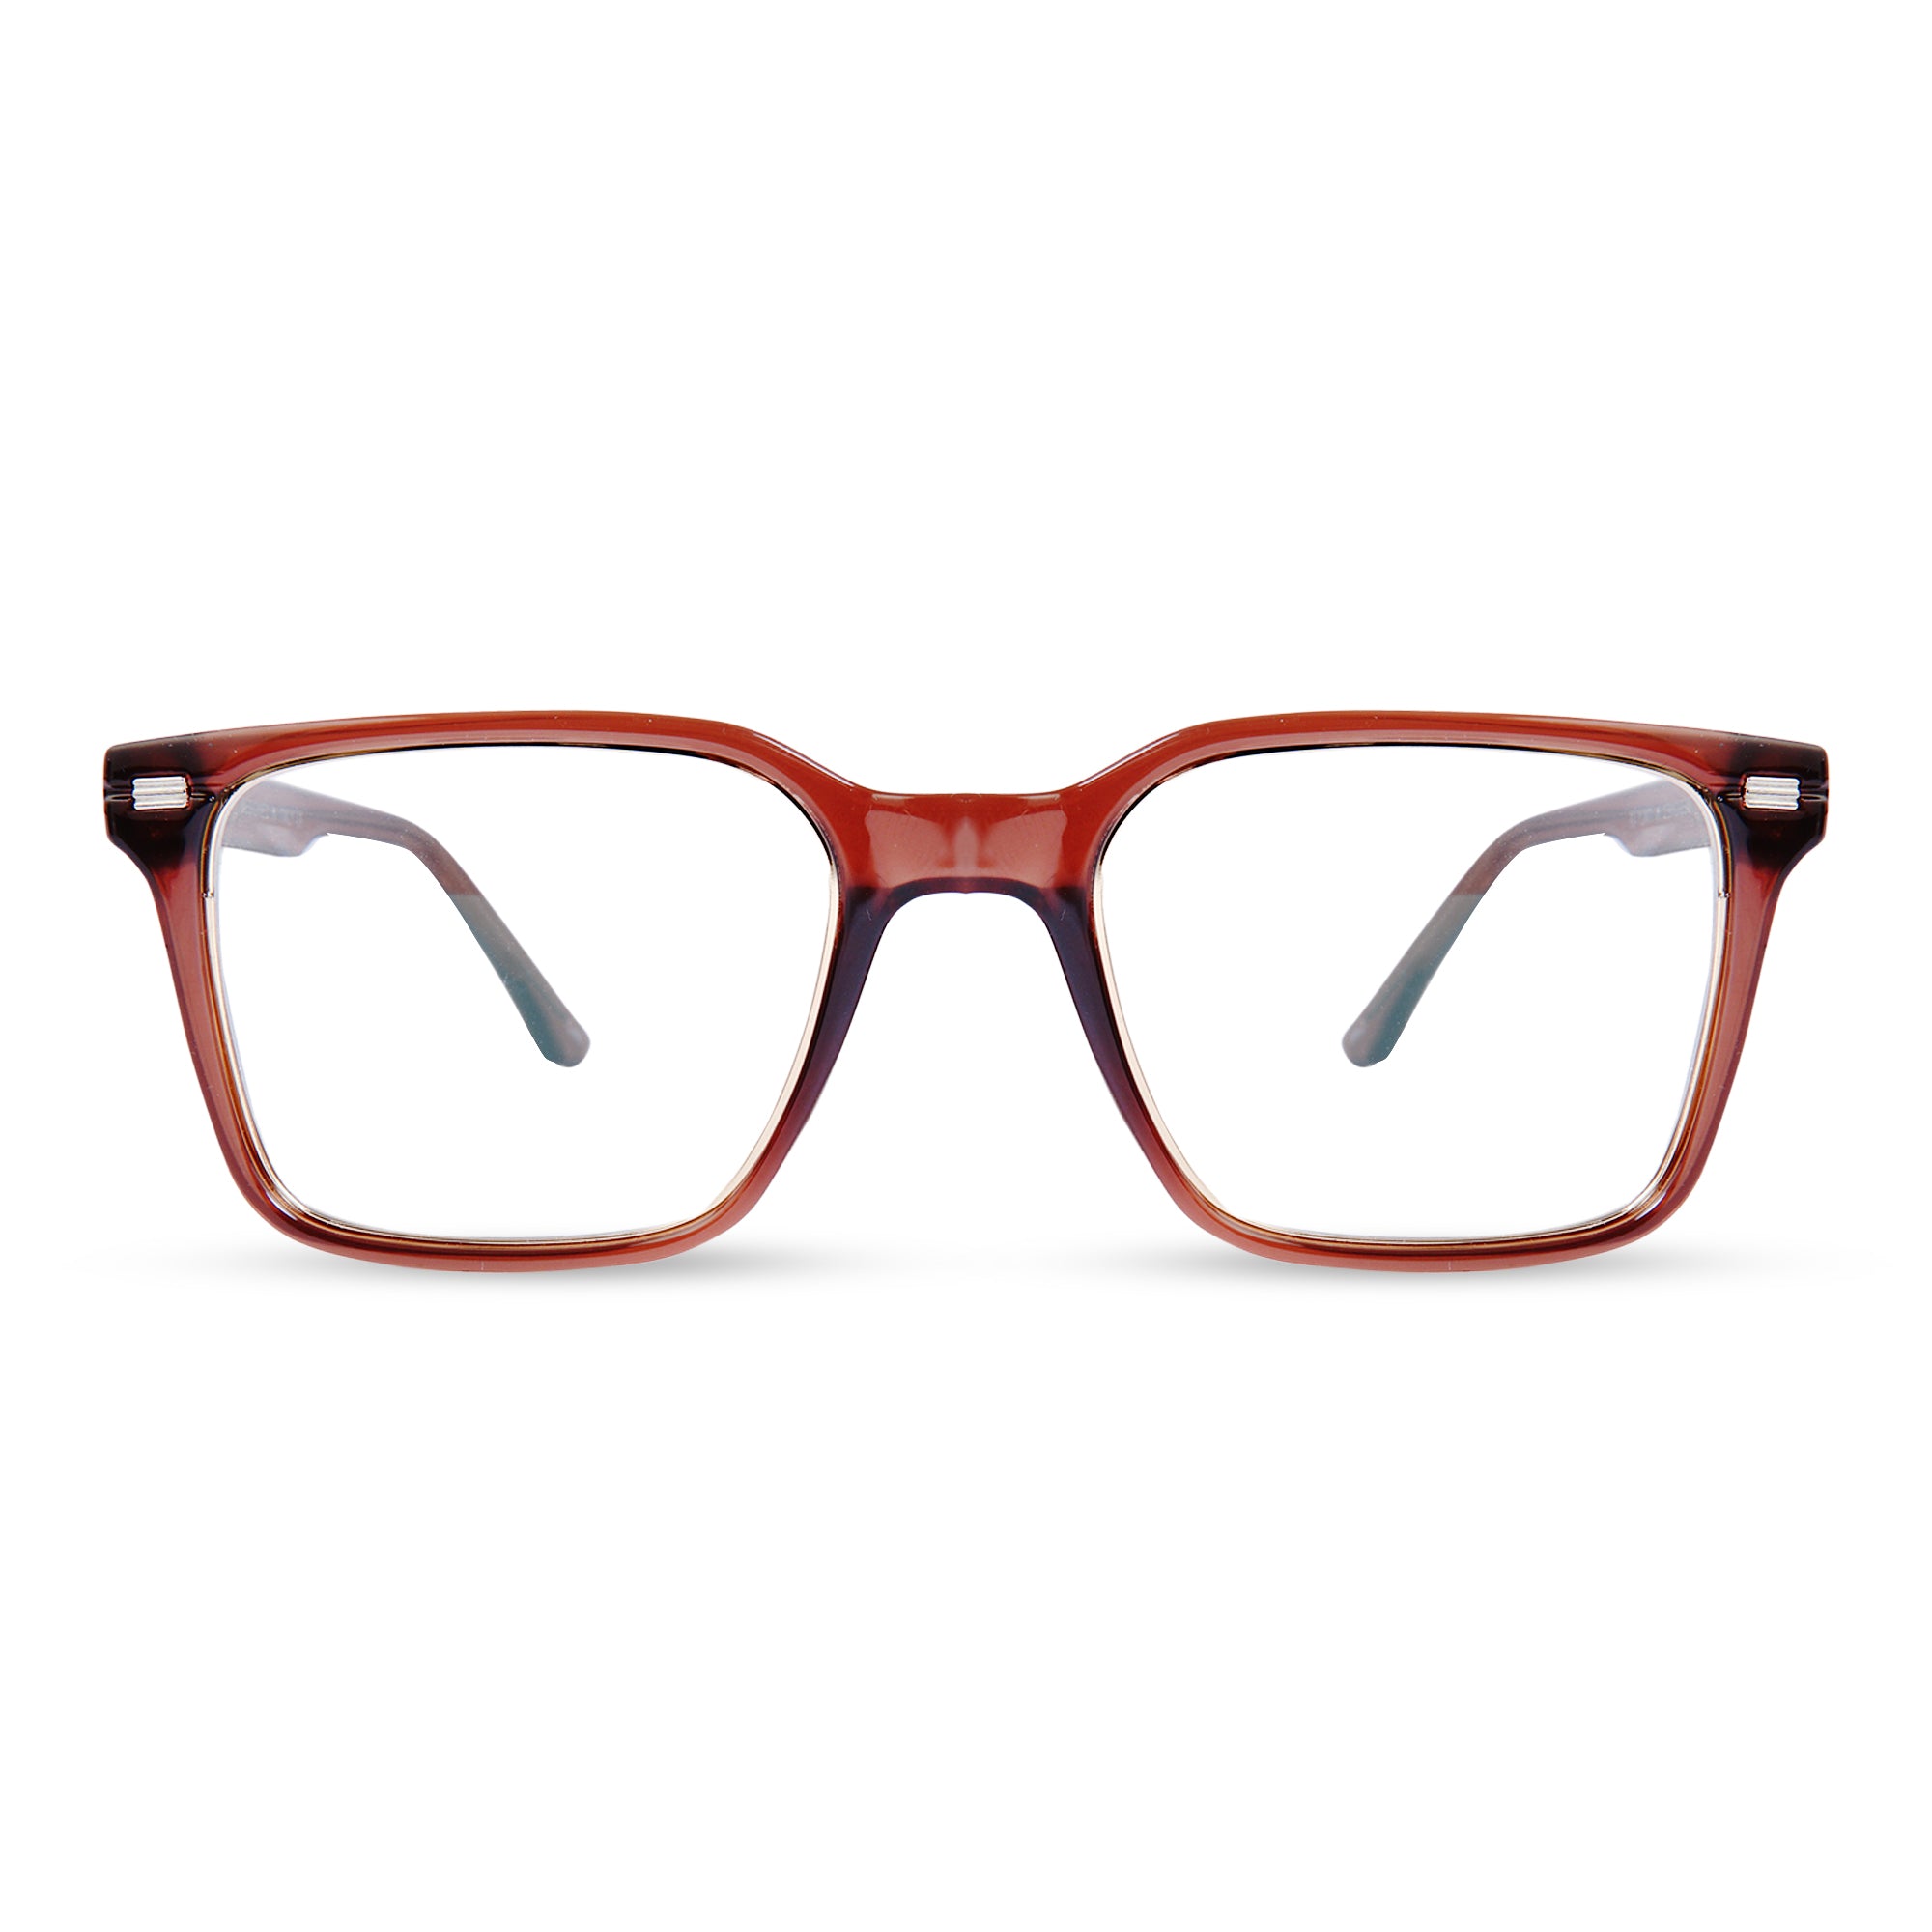 Transparent BROWN Square frame Eyeglasses - LR008